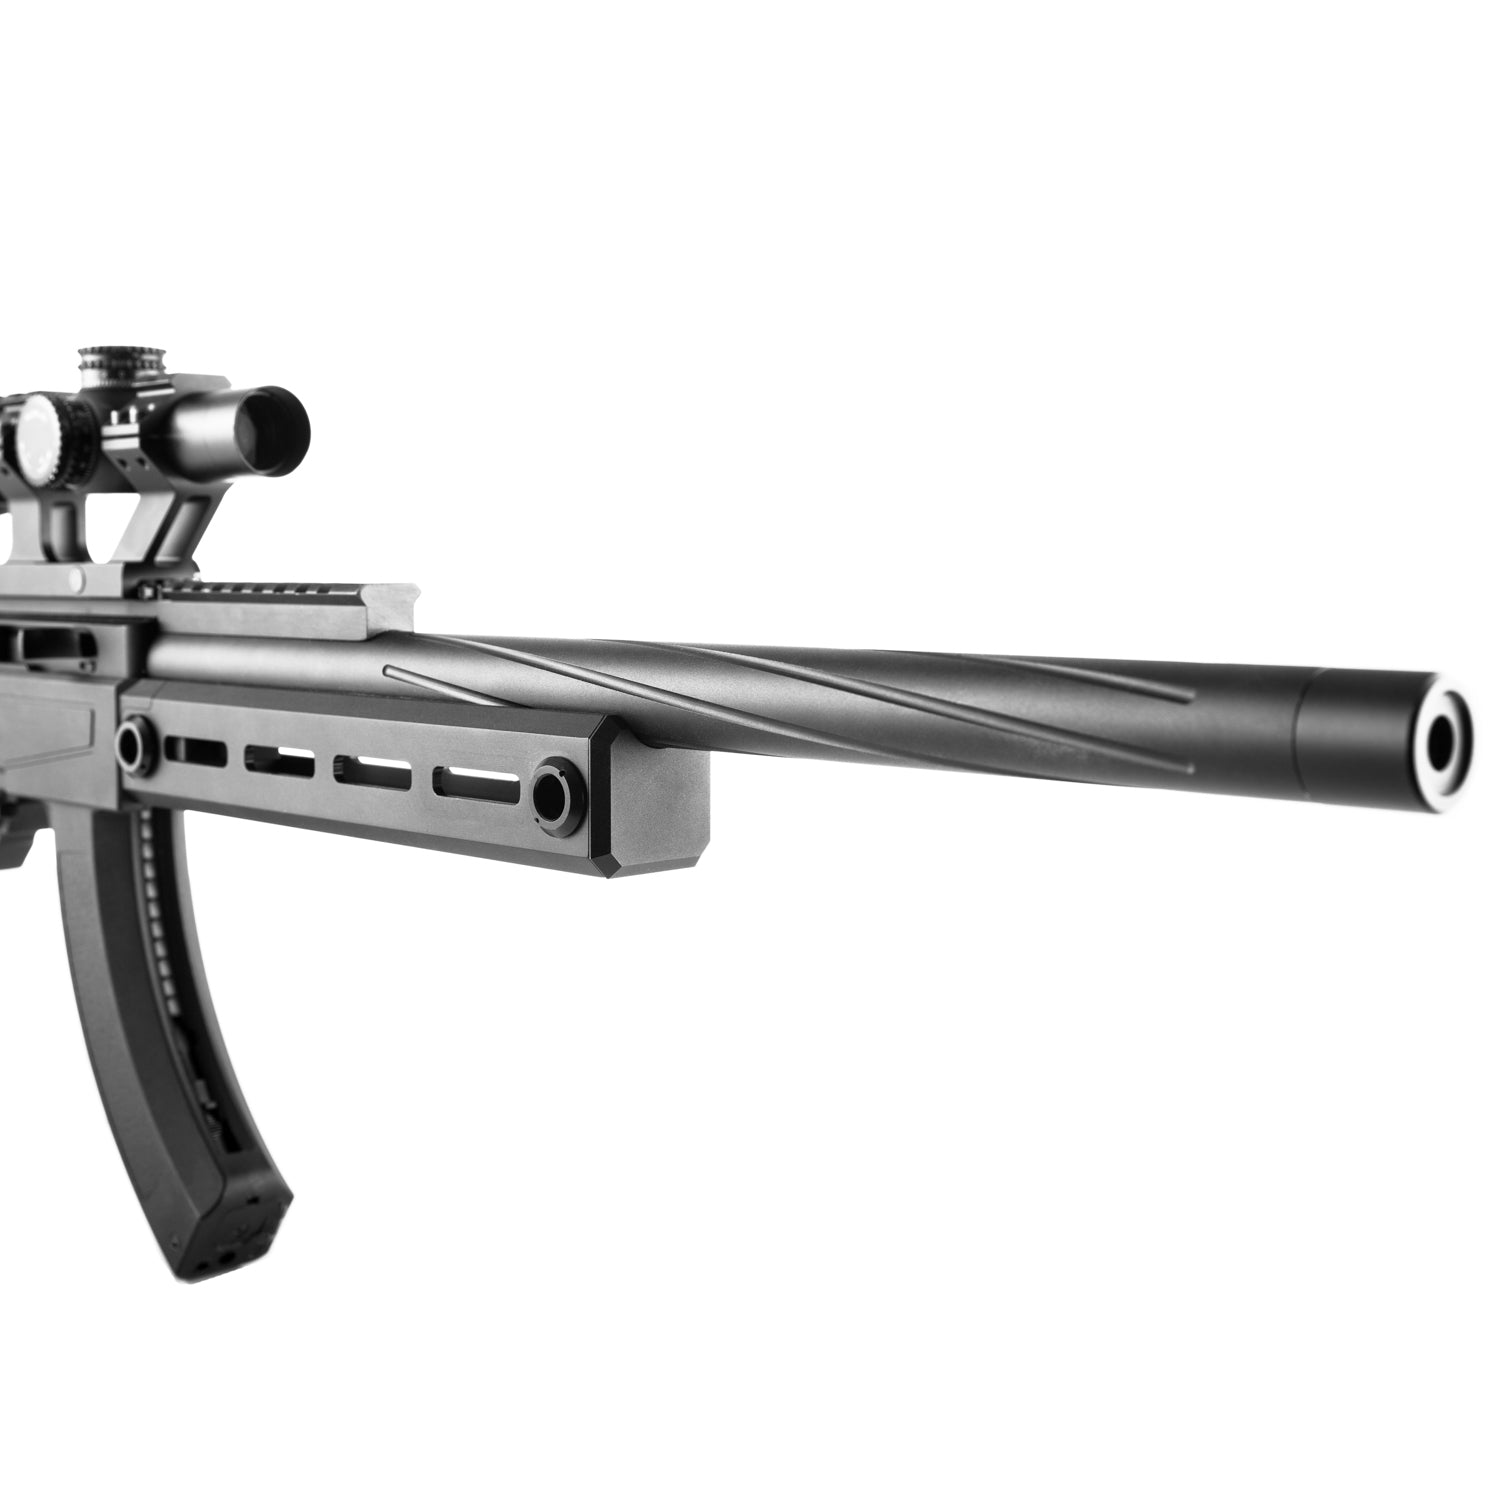 NOVRITSCH SSQ22 Gas Blowback Rifle